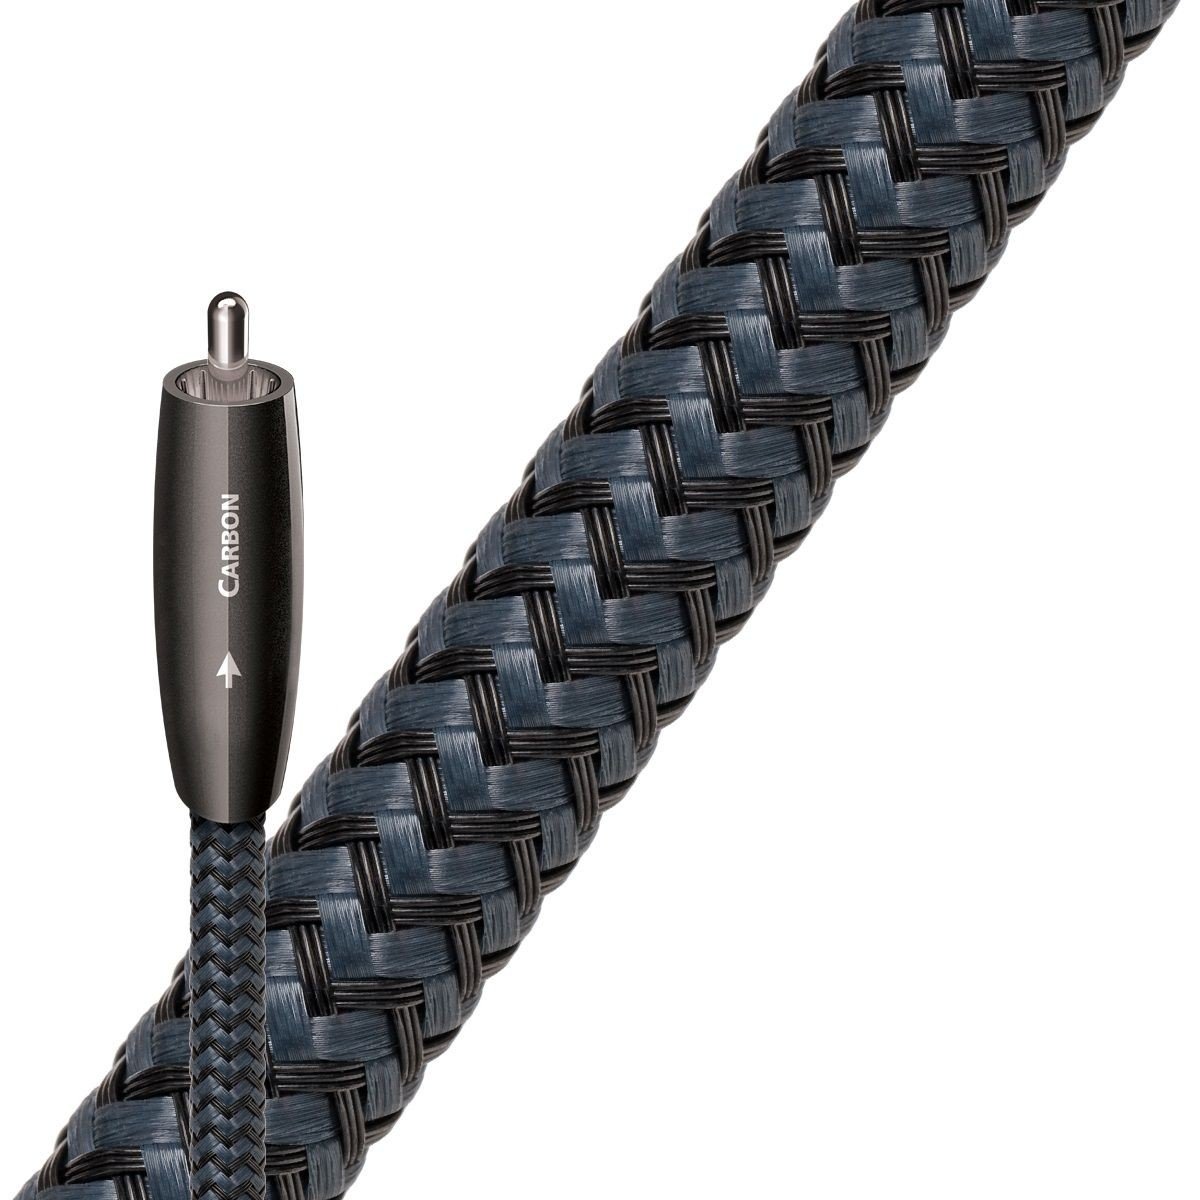 Cabluri coaxiale - Cablu digital coaxial AudioQuest Carbon 2 m, audioclub.ro